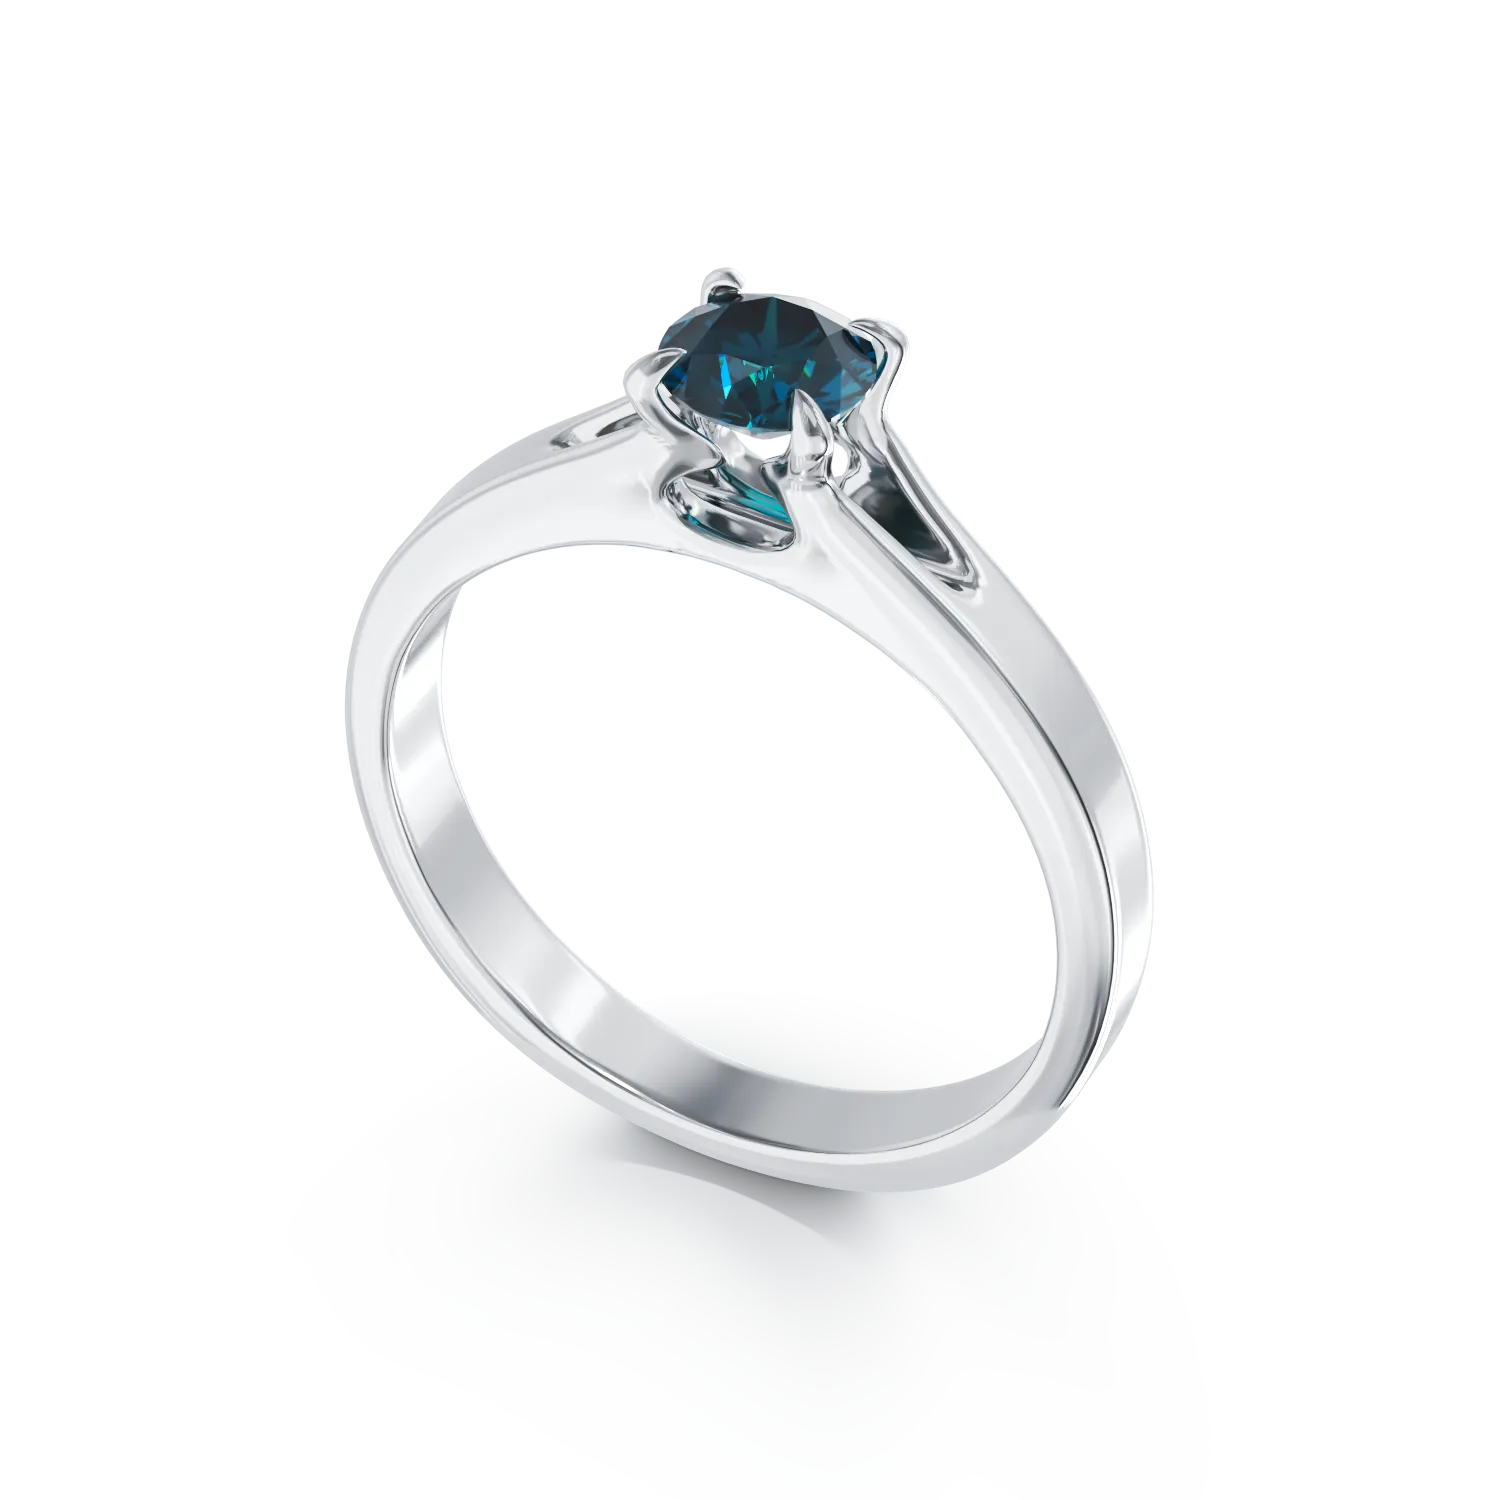 Eljegyzési gyűrű 18K-os fehér aranyból egy 0,44ct solitaire kék gyémánttal